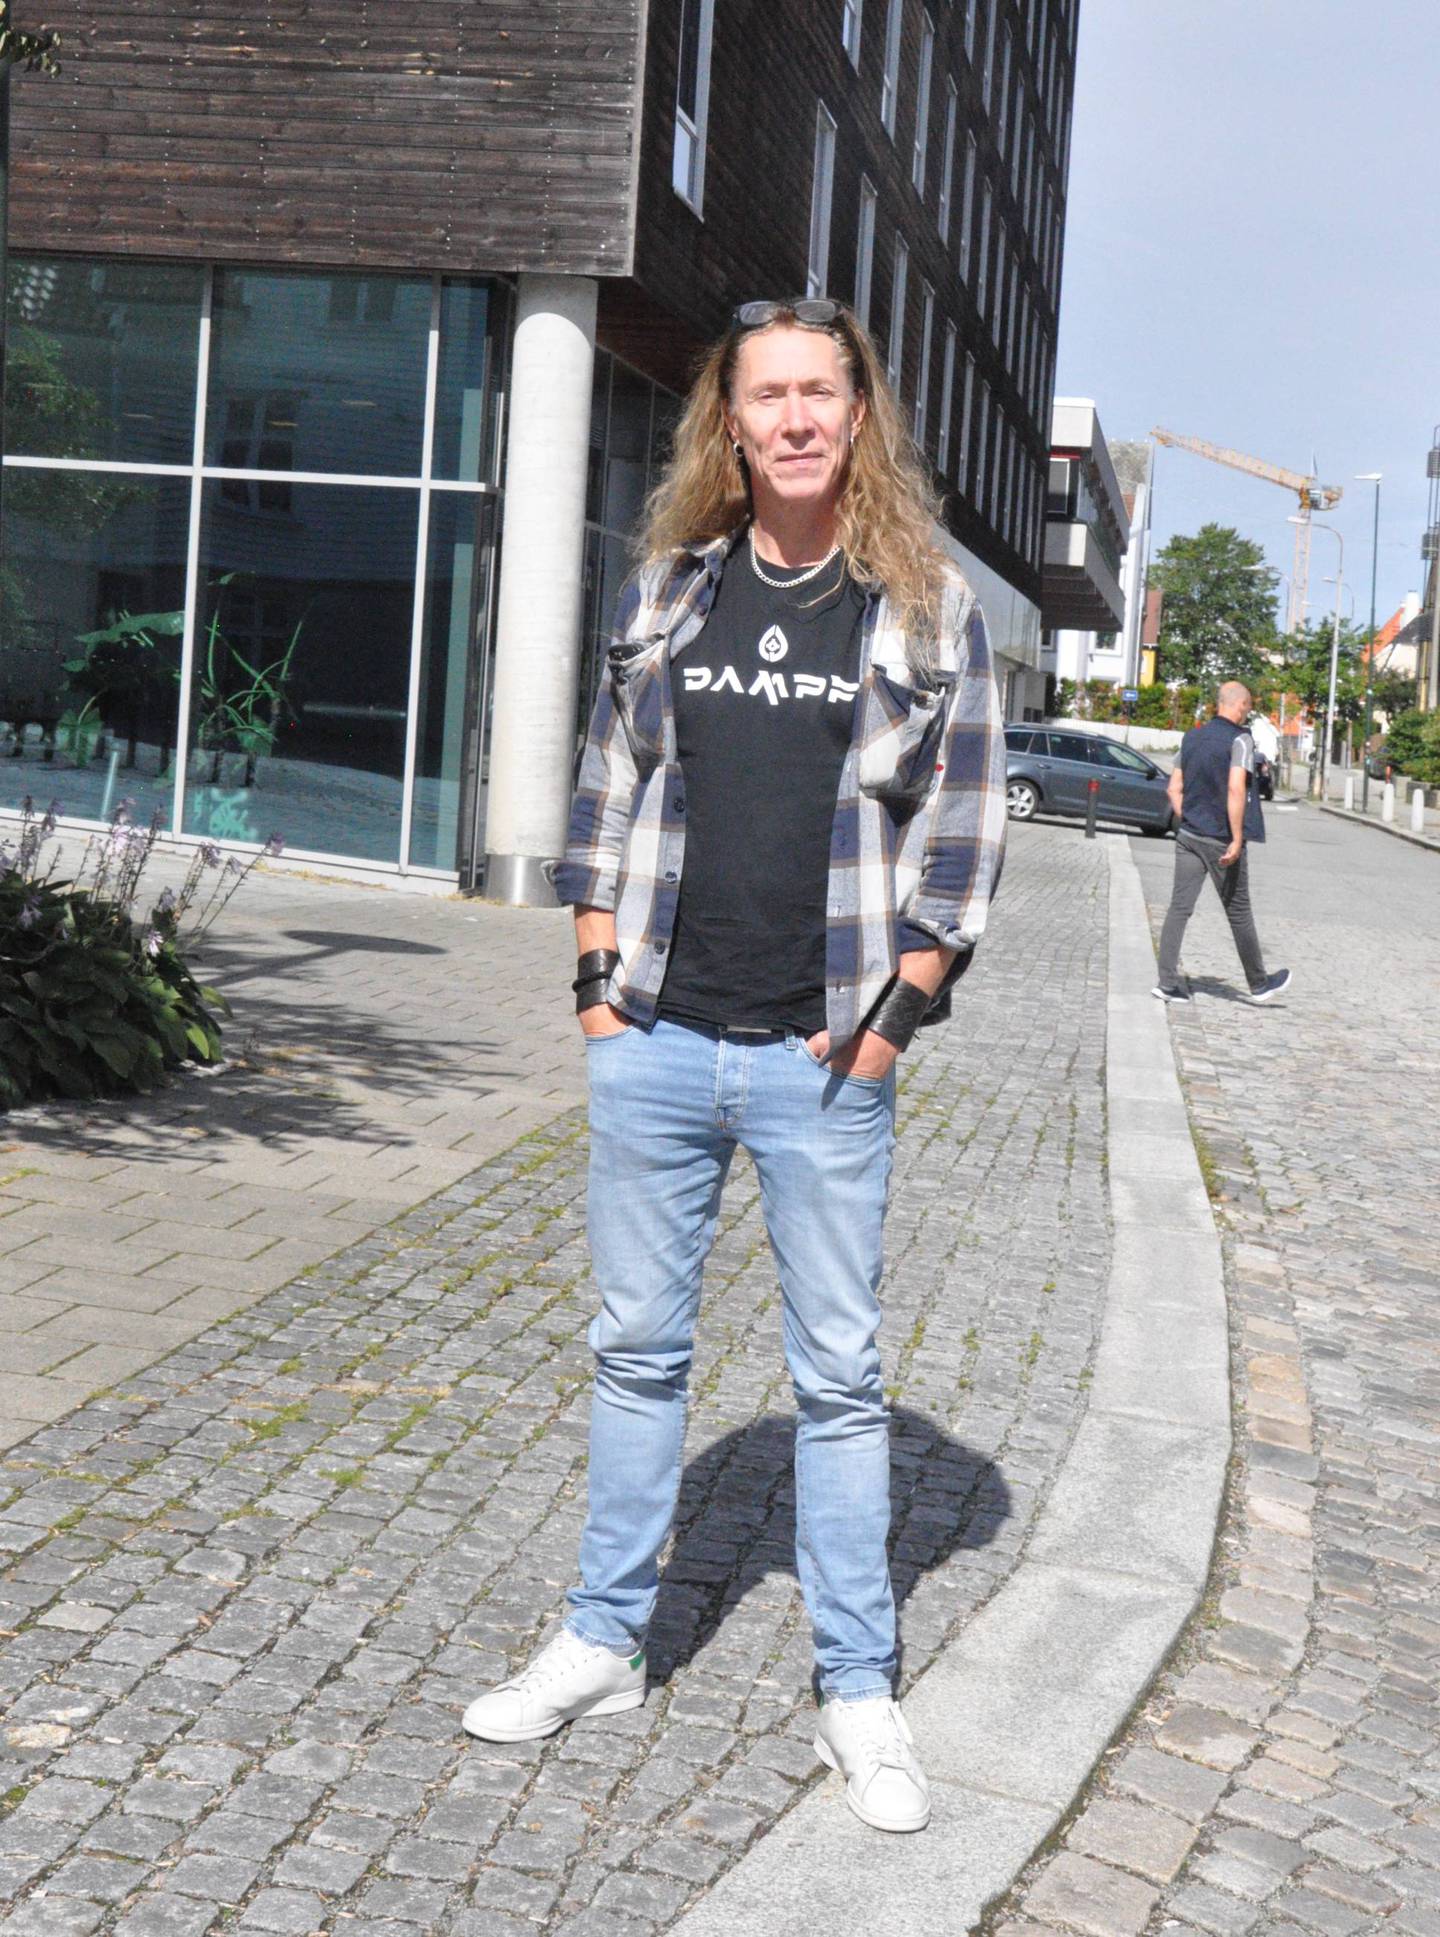 Selv om E-Type er mest kjent for sangene sine i eurodance-sjangeren, har han også et eget heavy metal-band kalt «Dampf». Fritiden i Stavanger skal han bruke på viking-museer.